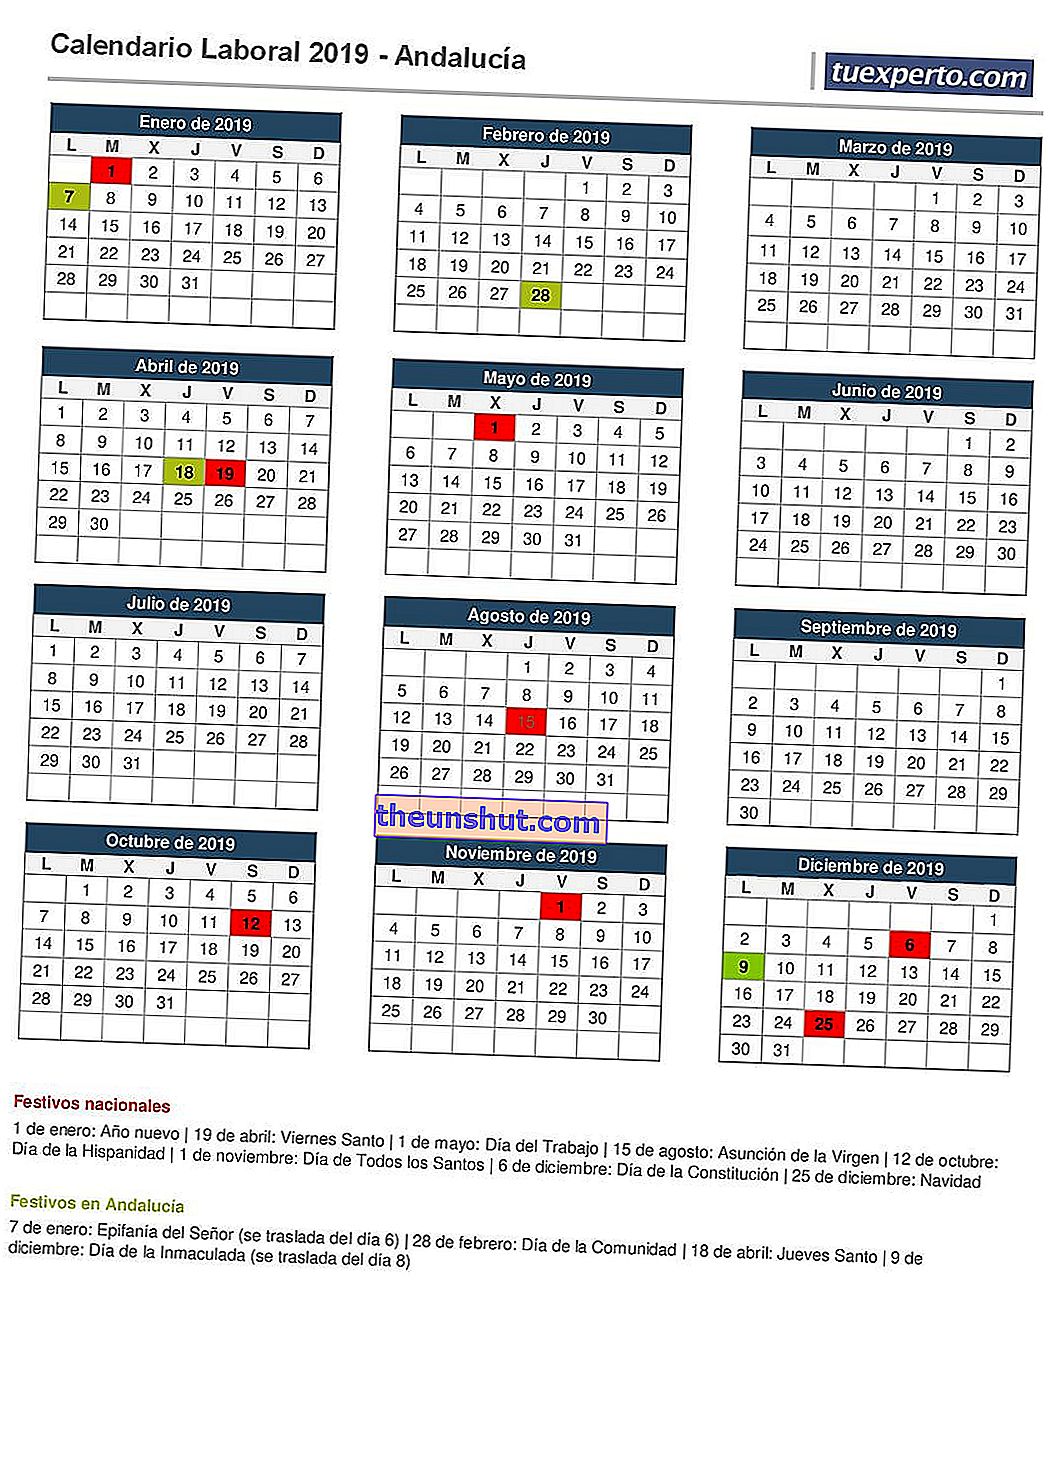 Calendario di lavoro in Andalusia